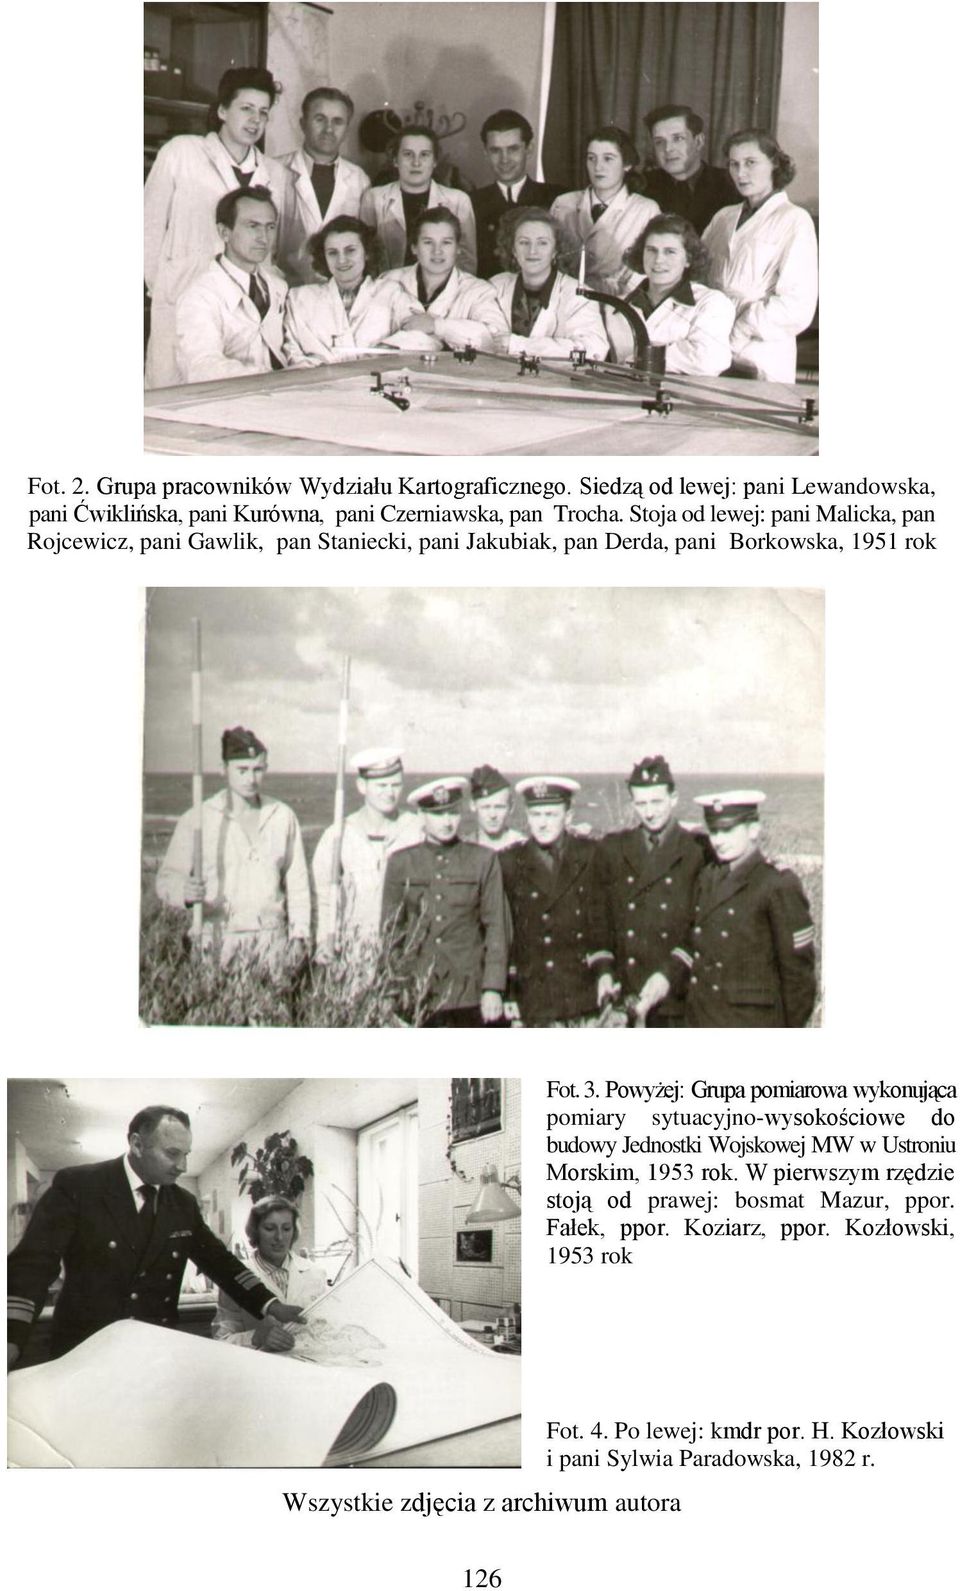 Powyżej: Grupa pomiarowa wykonująca pomiary sytuacyjno-wysokościowe do budowy Jednostki Wojskowej MW w Ustroniu Morskim, 1953 rok.